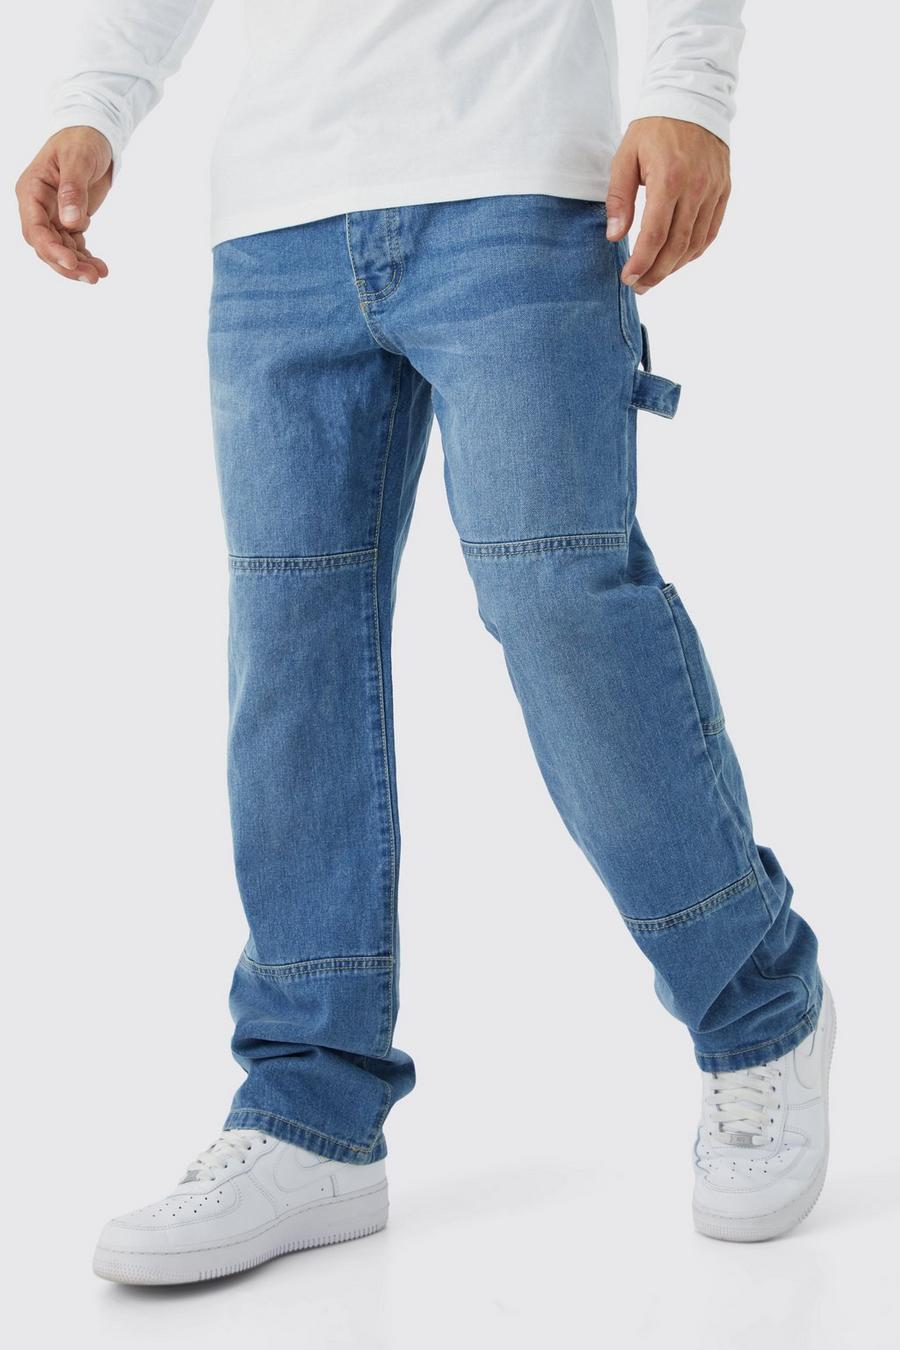 Men's Baggy Fit Carpenter Jeans